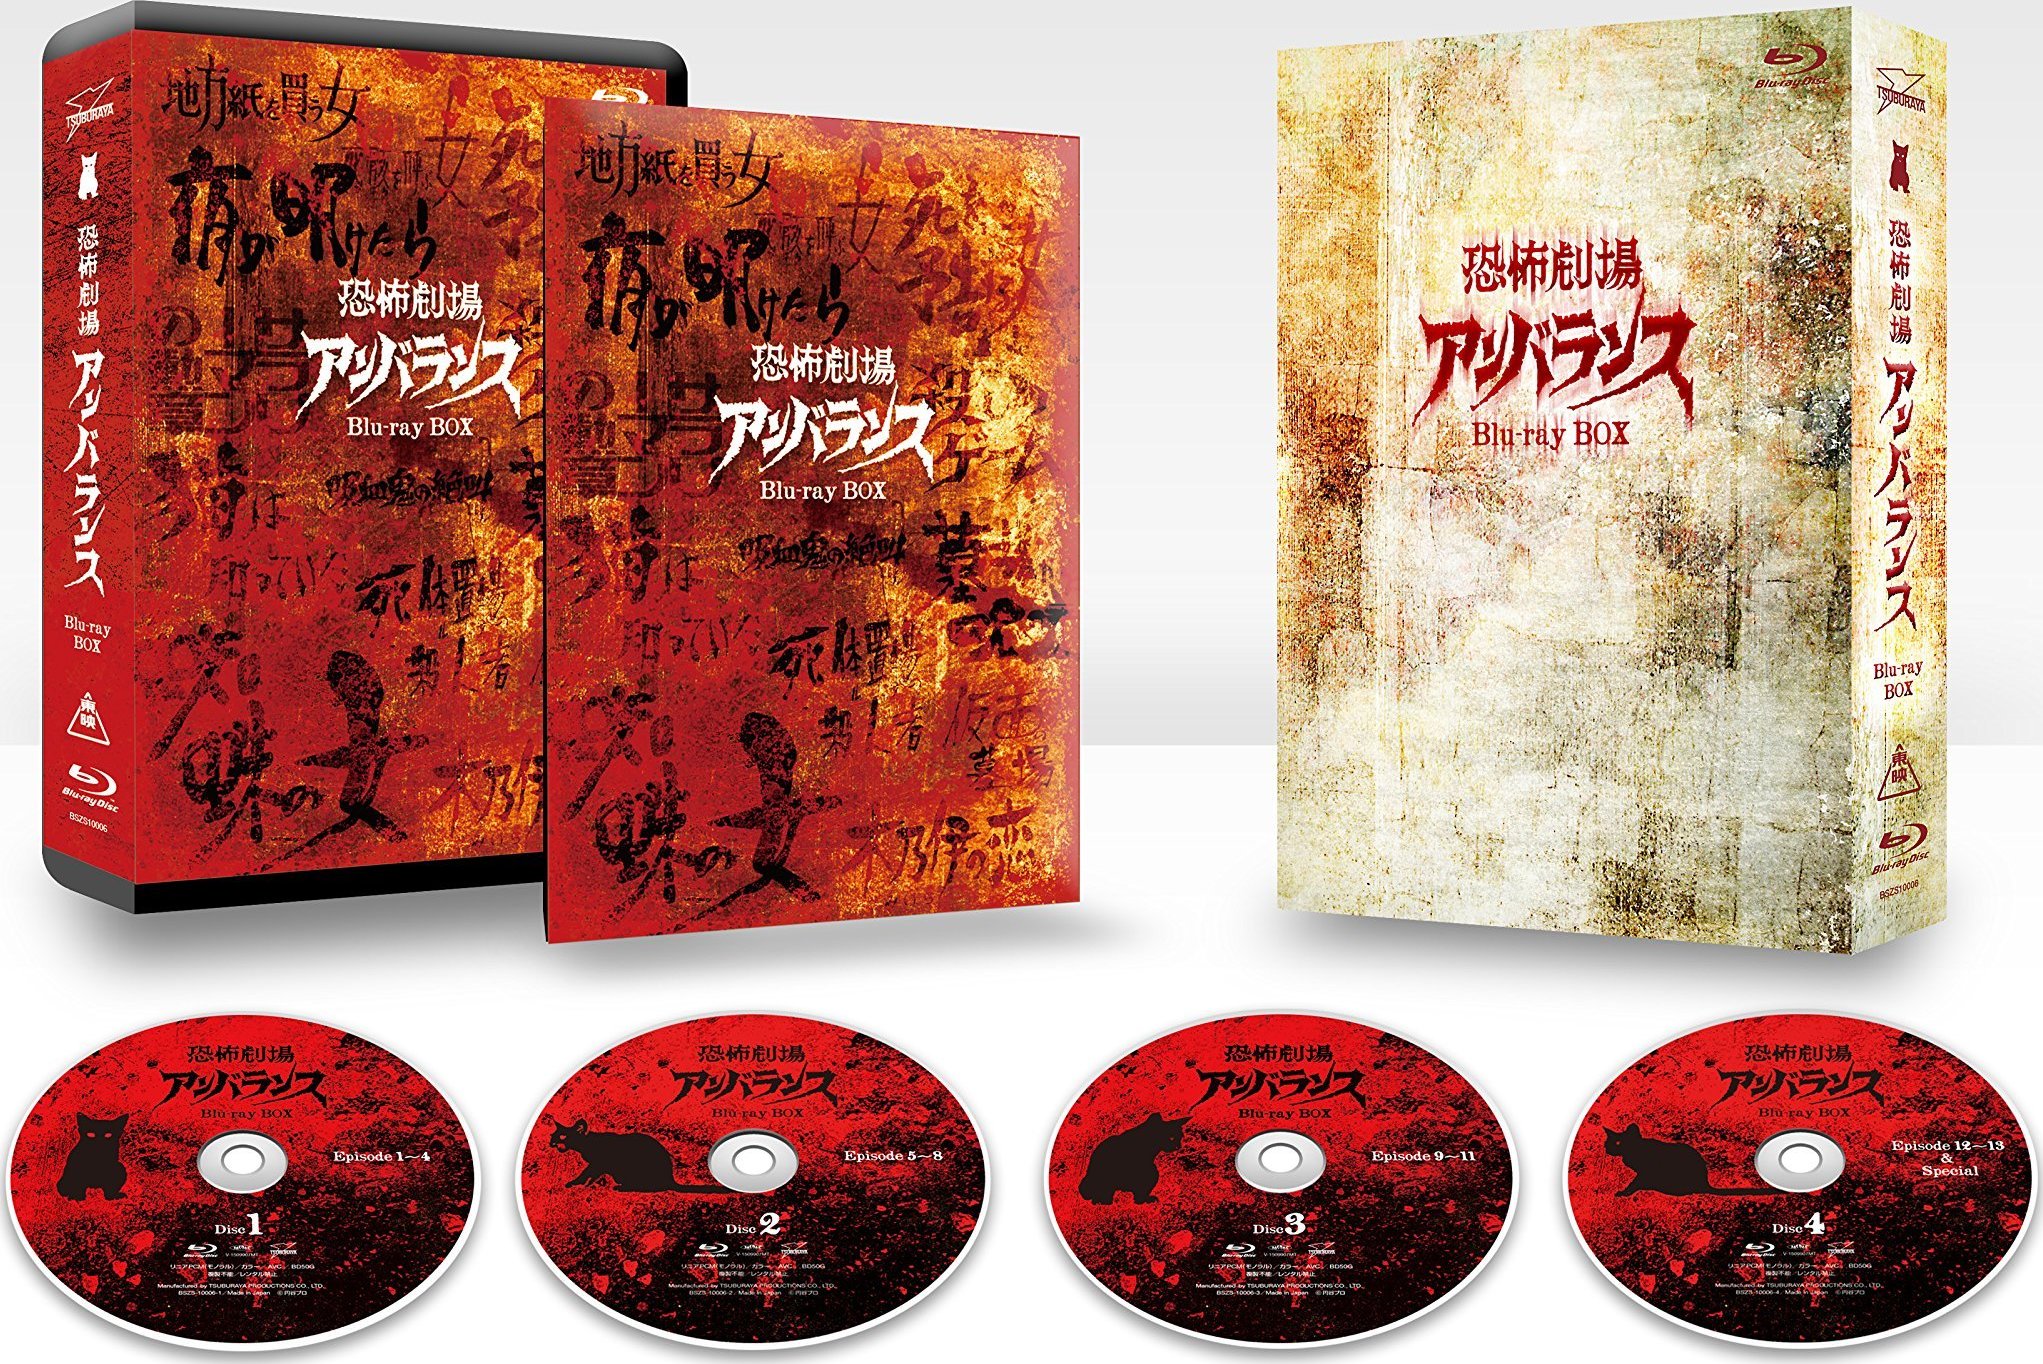 恐怖劇場アンバランス Blu-ray BOX Blu-ray (Horror Theater Unbalance Blu-ray BOX)  (Japan)